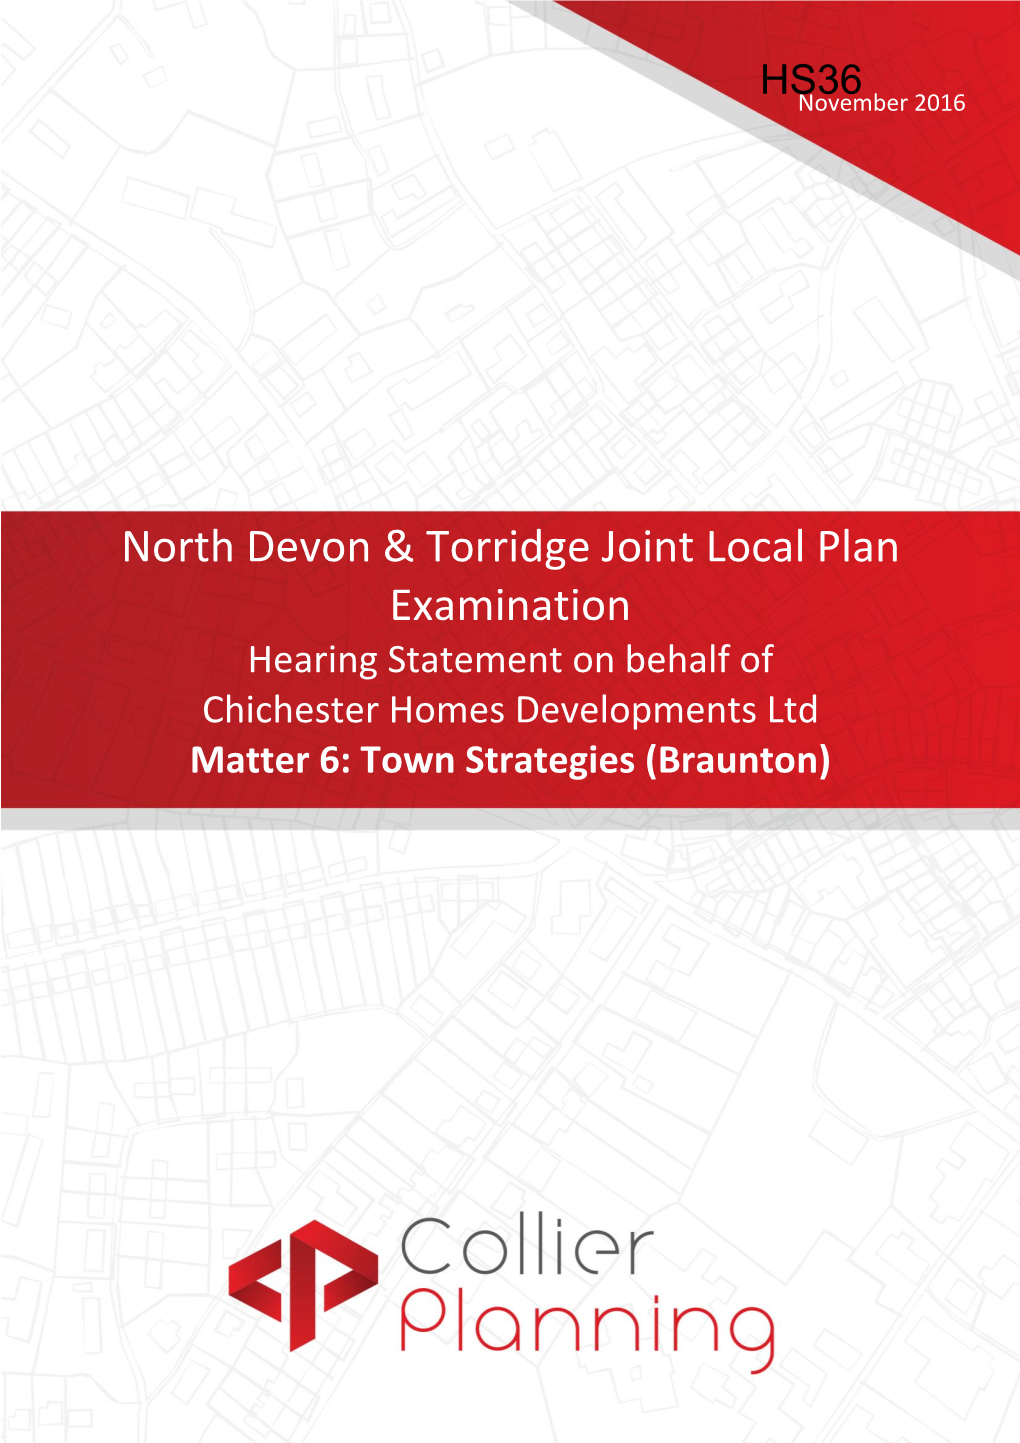 North Devon & Torridge Joint Local Plan Examination